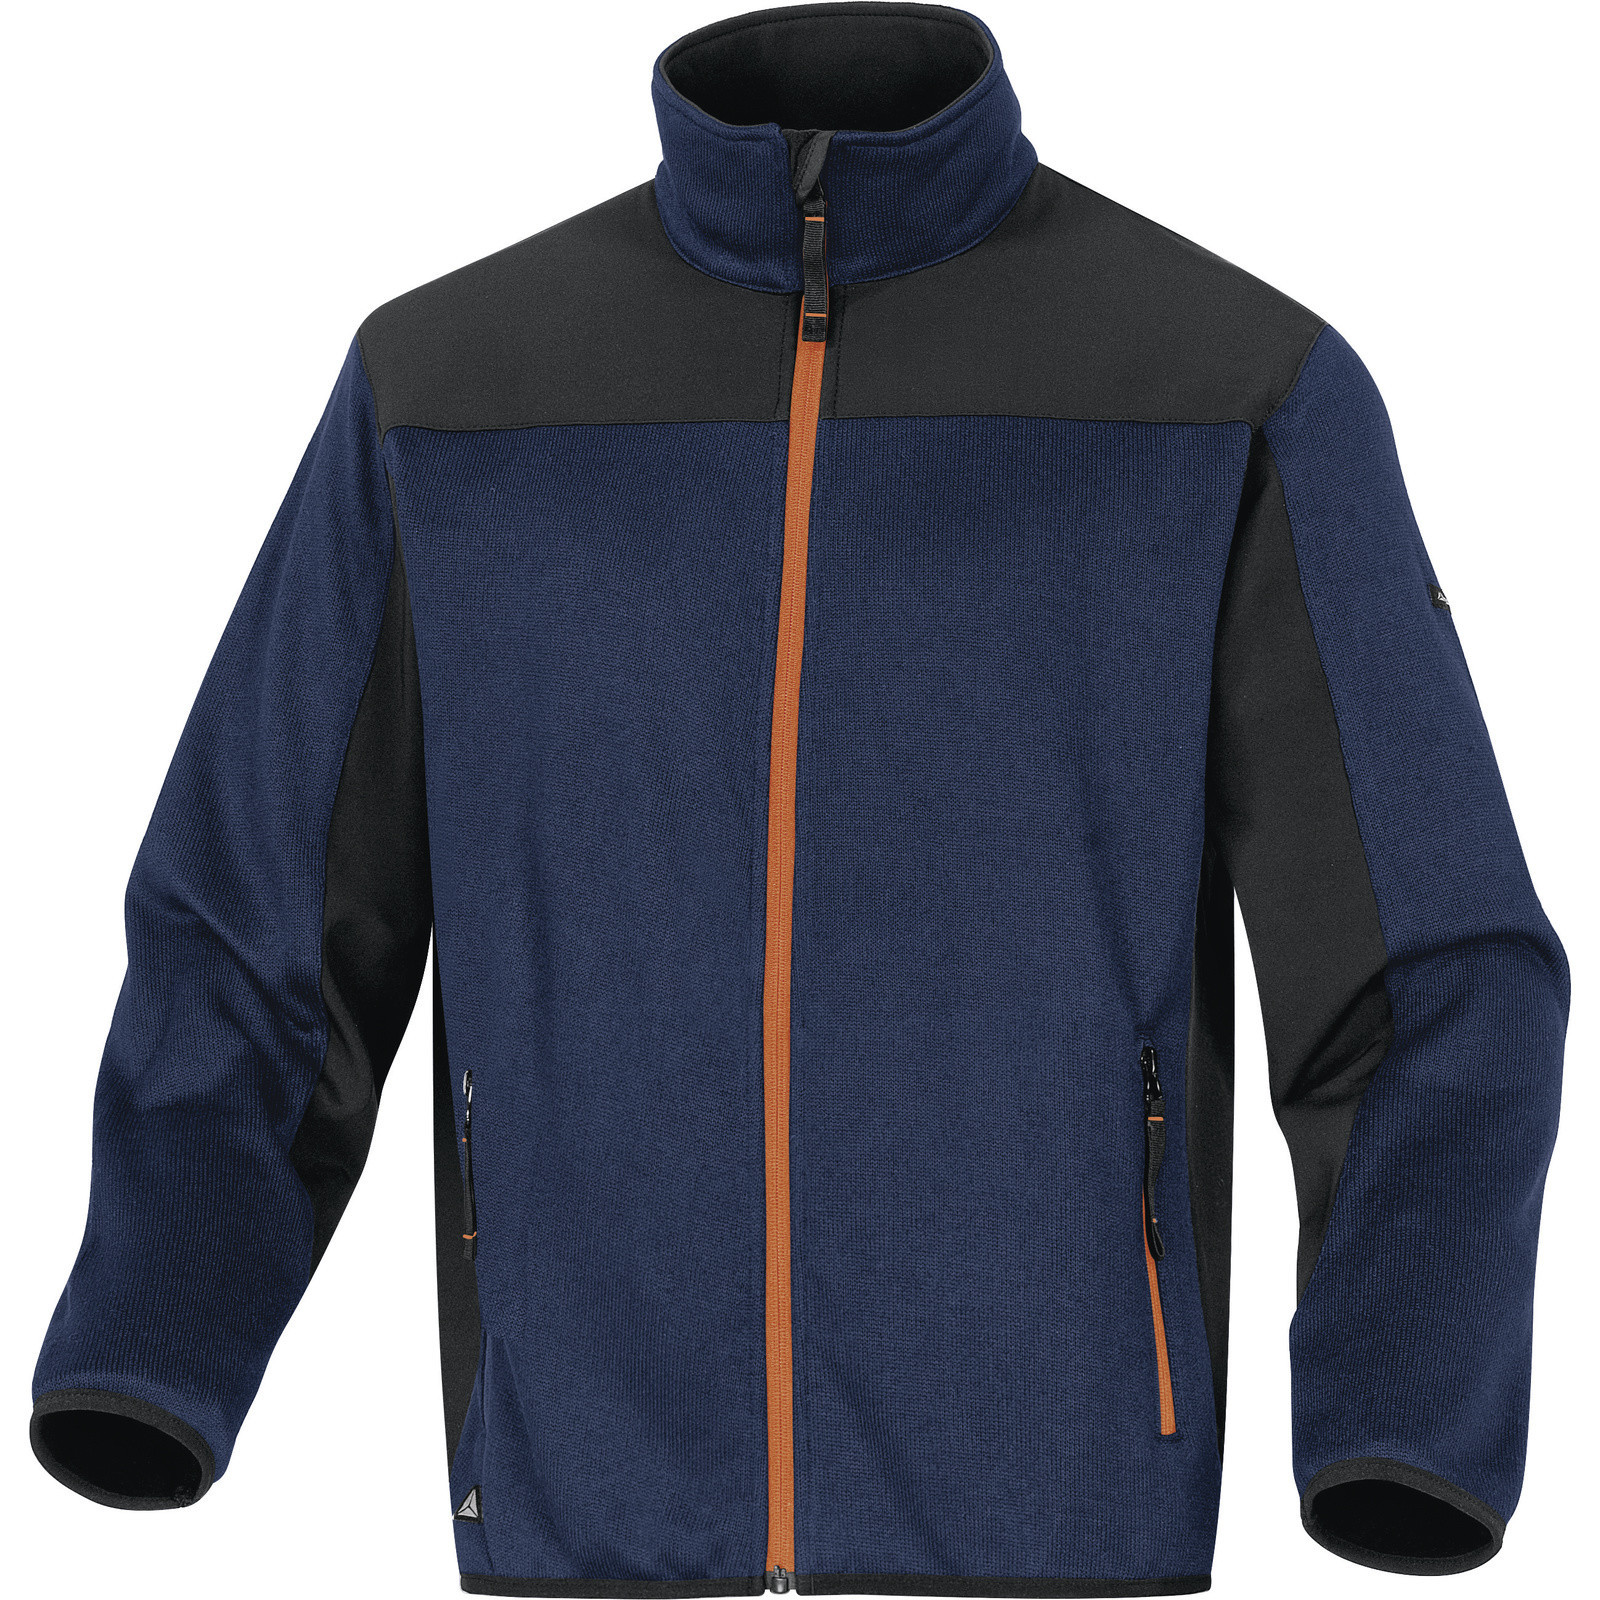 Softshellovo-pleteninová bunda Delta Plus Beaver - veľkosť: 3XL, farba: nám. modrá/oranžová